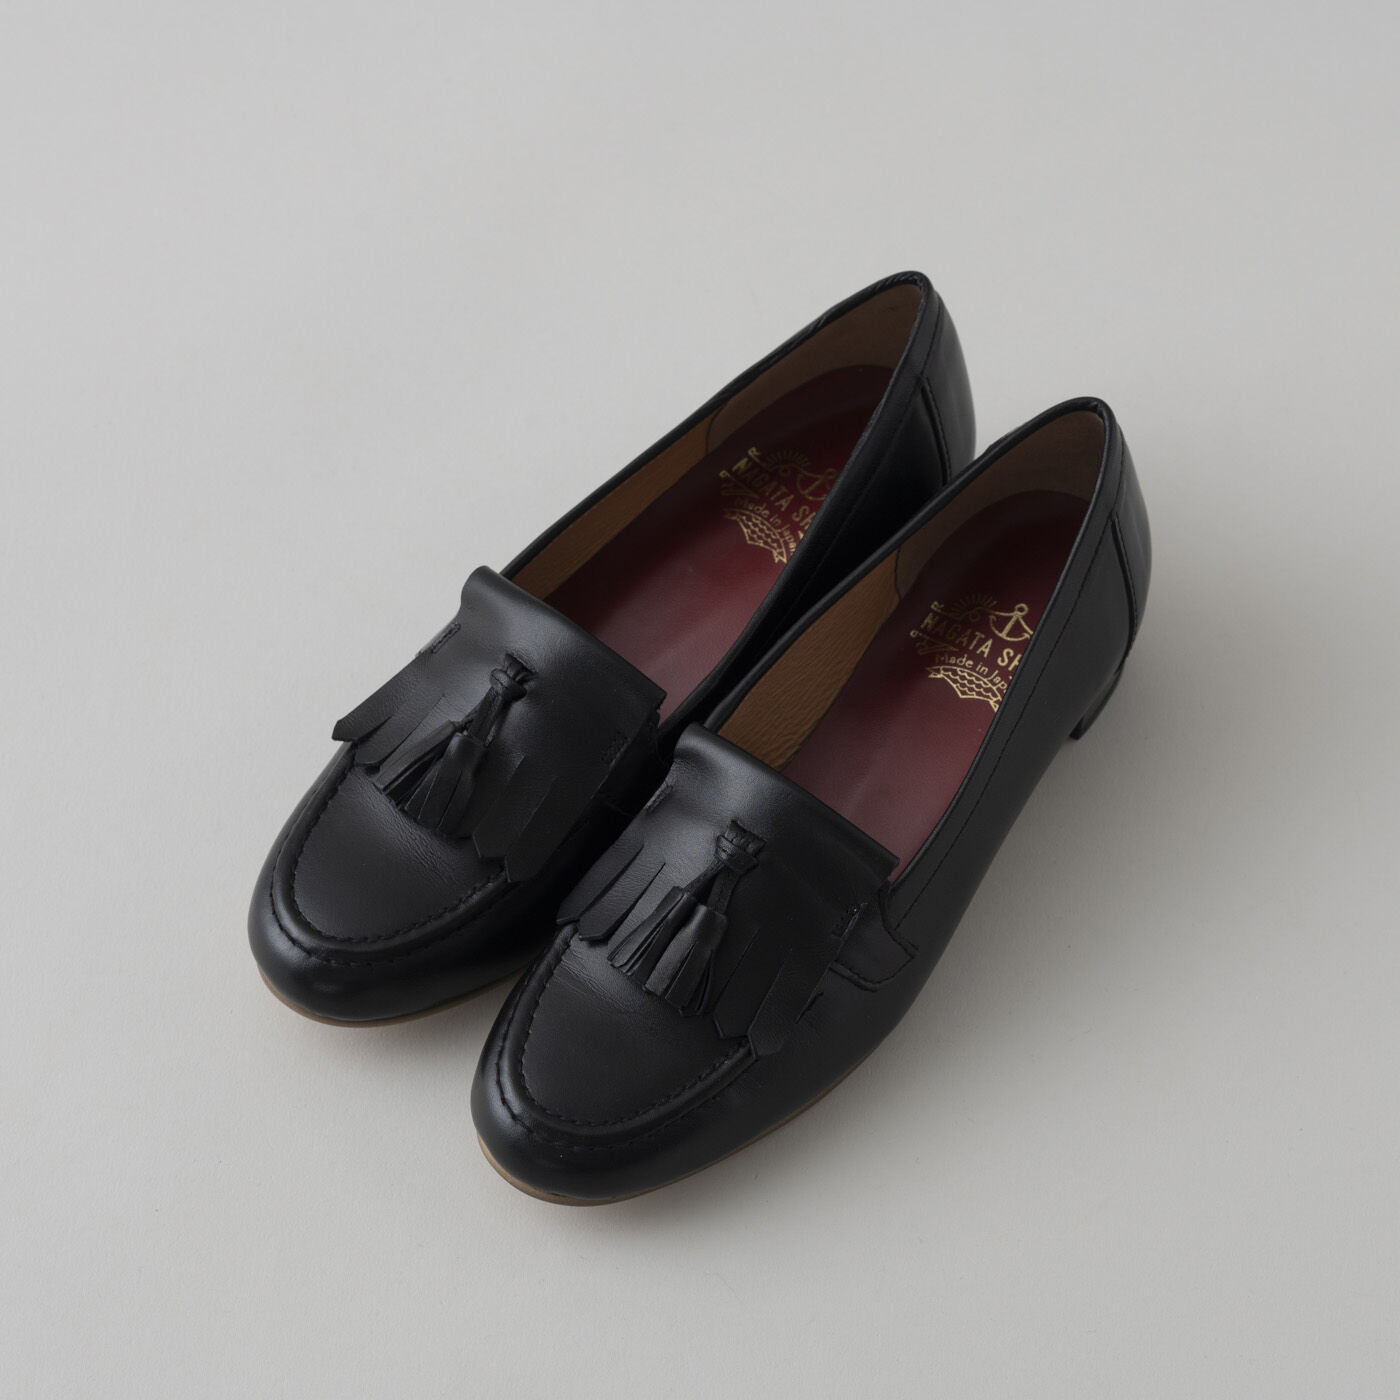 ＆Stories|長田の靴メーカーと作った　職人本革のタッセルローファー〈ブラック〉|幅広の足もすっぽり包み込みつつ、ほっそりと上品な足もとを演出します。